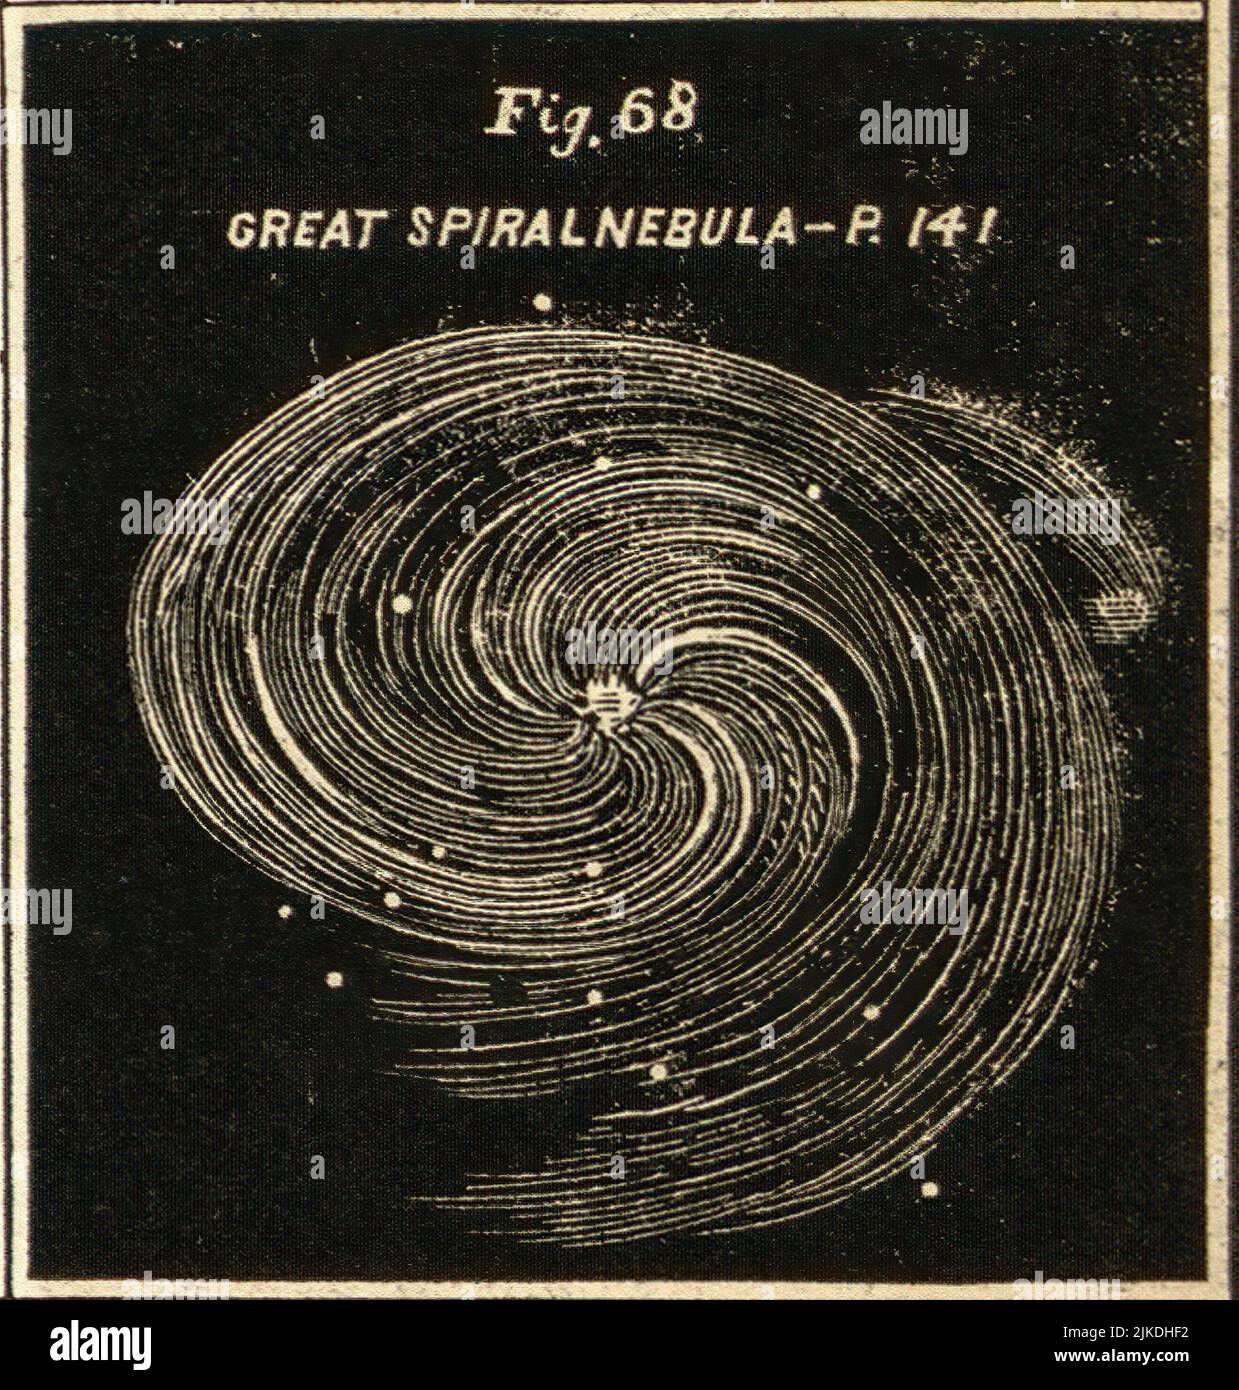 Gran Nebulosa Espiral - Atlas Diseñado para ilustrar la Geografía de los cielos de Burritt - Burritt, Elijah H. Estrellas dobles y racimos. Clústeres, Foto de stock